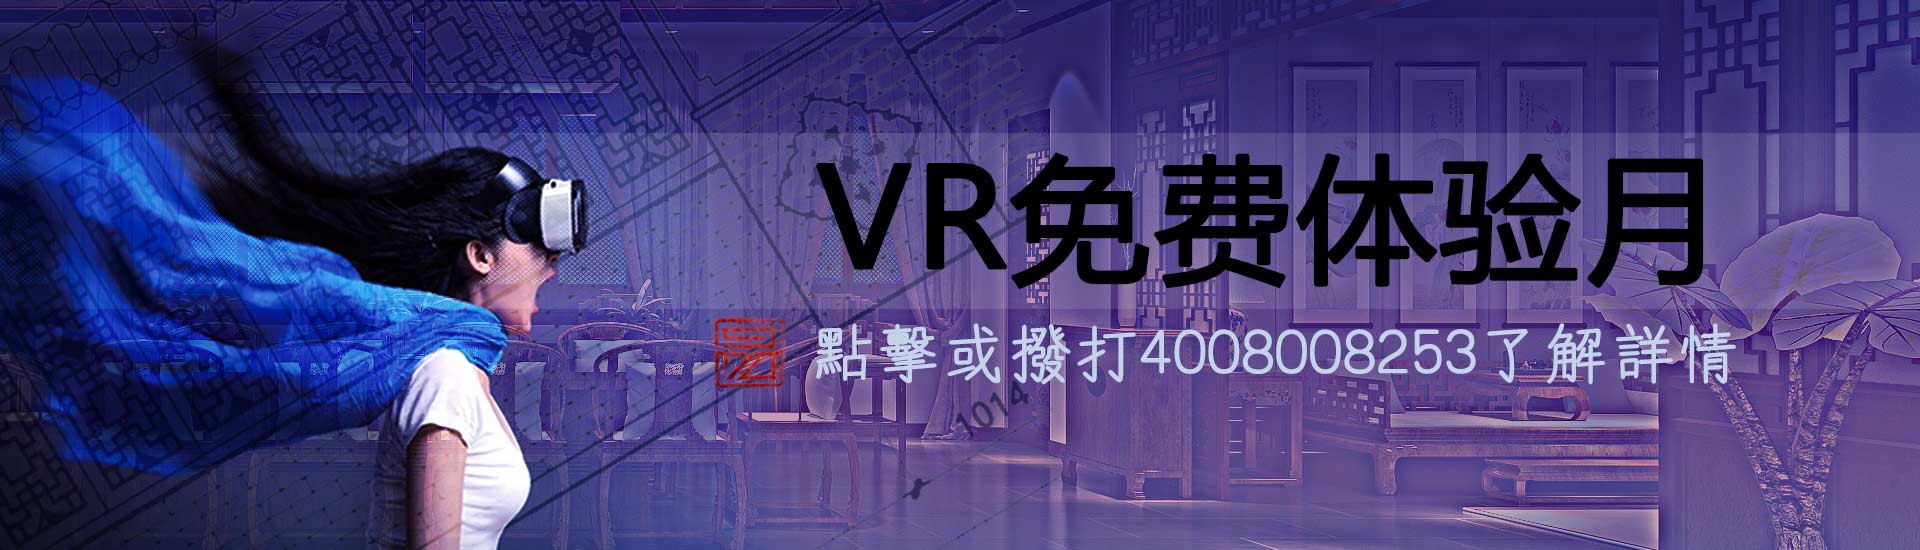 最火的网赌app设计VR体验月